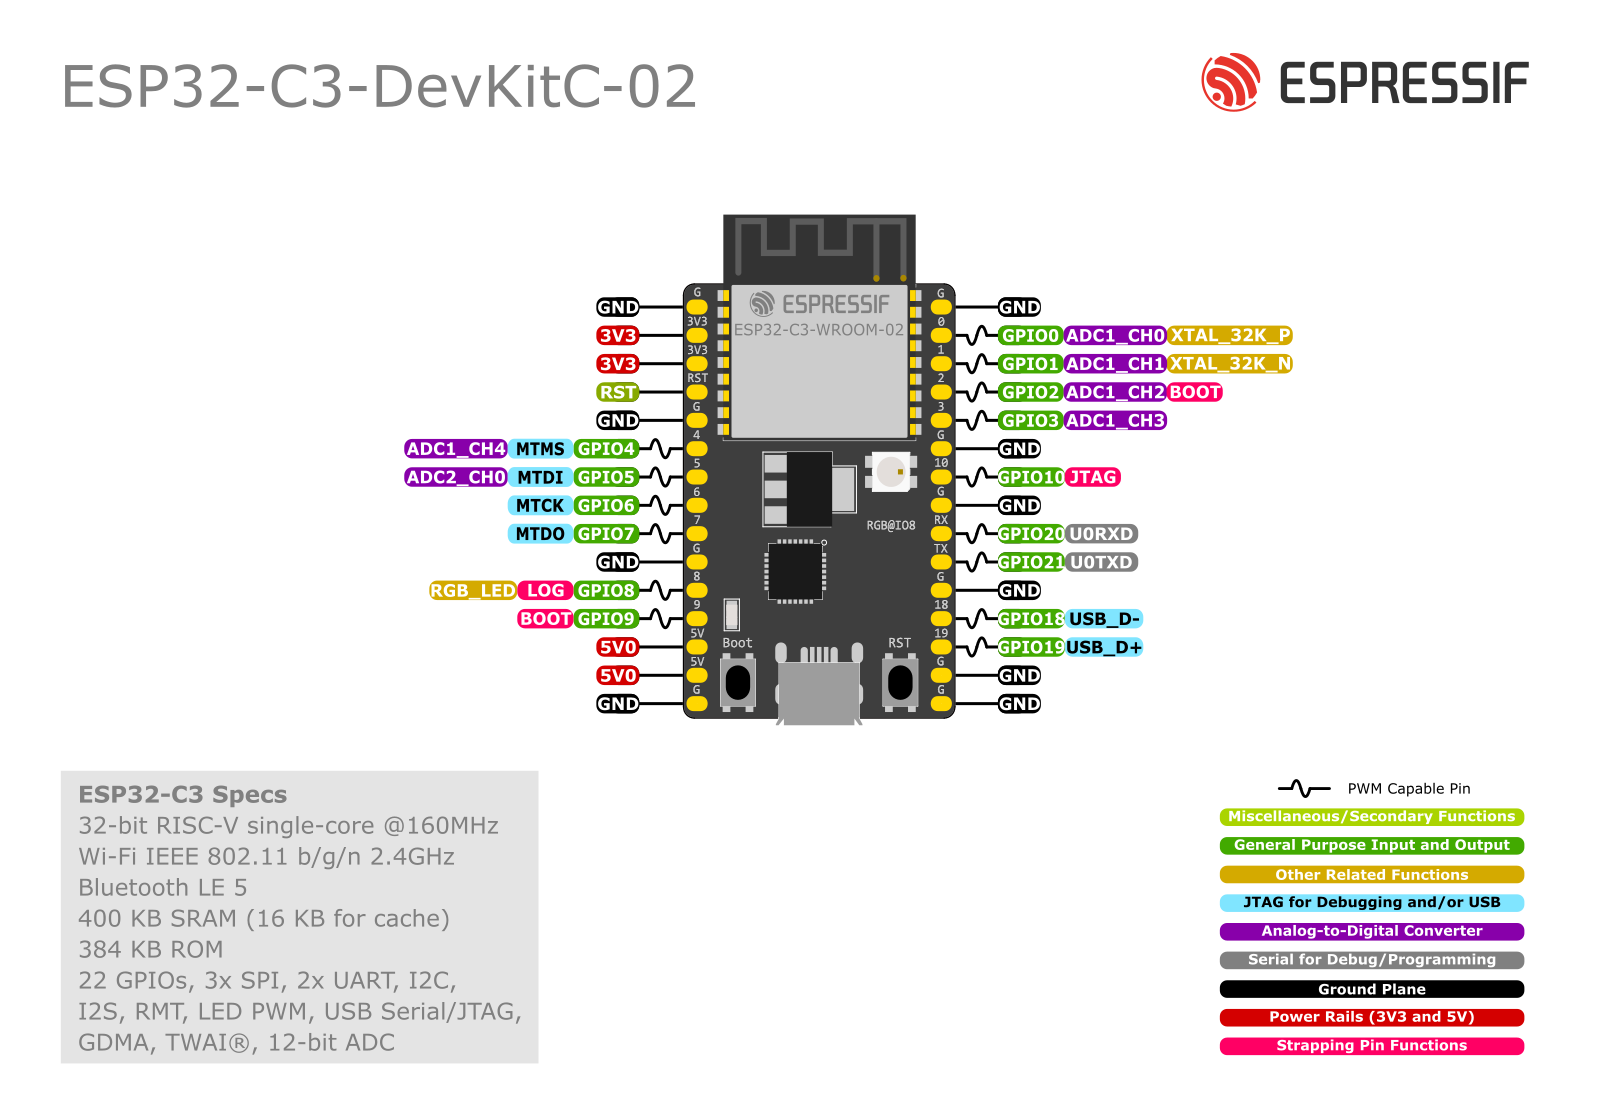 ESP32-C3-DevKitC-02 (click to enlarge)